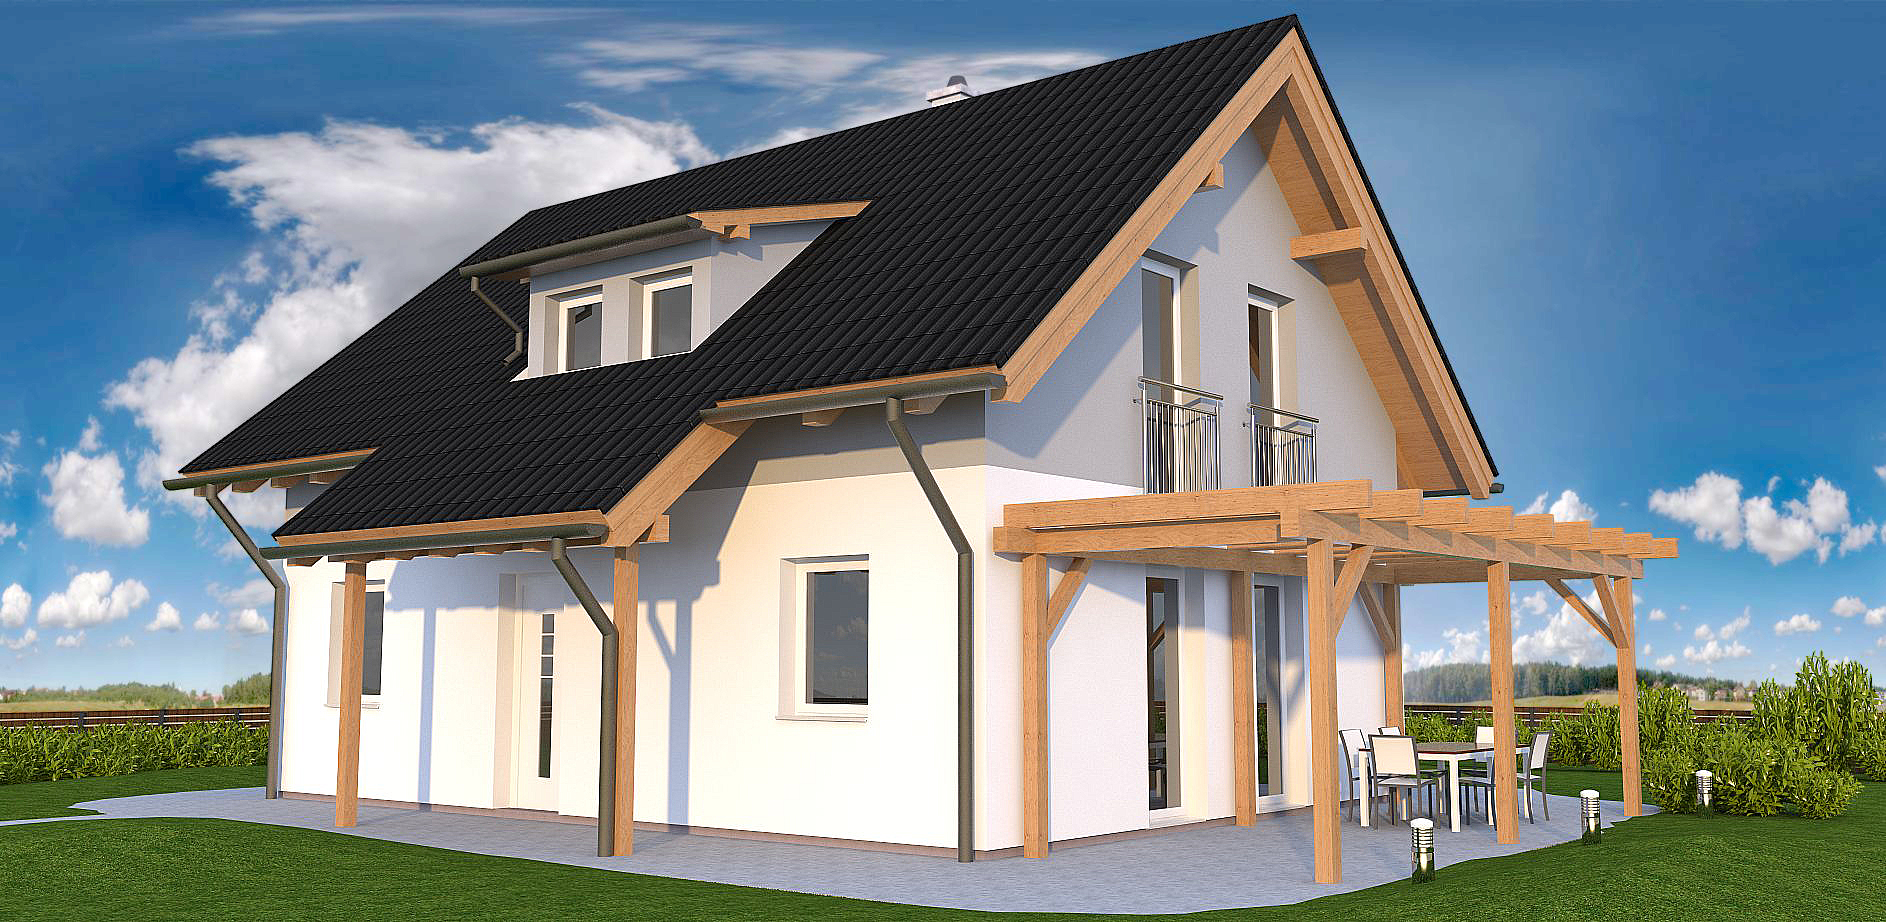 Postavíme tradiční nebo moderní dům podle přání zákazníka.